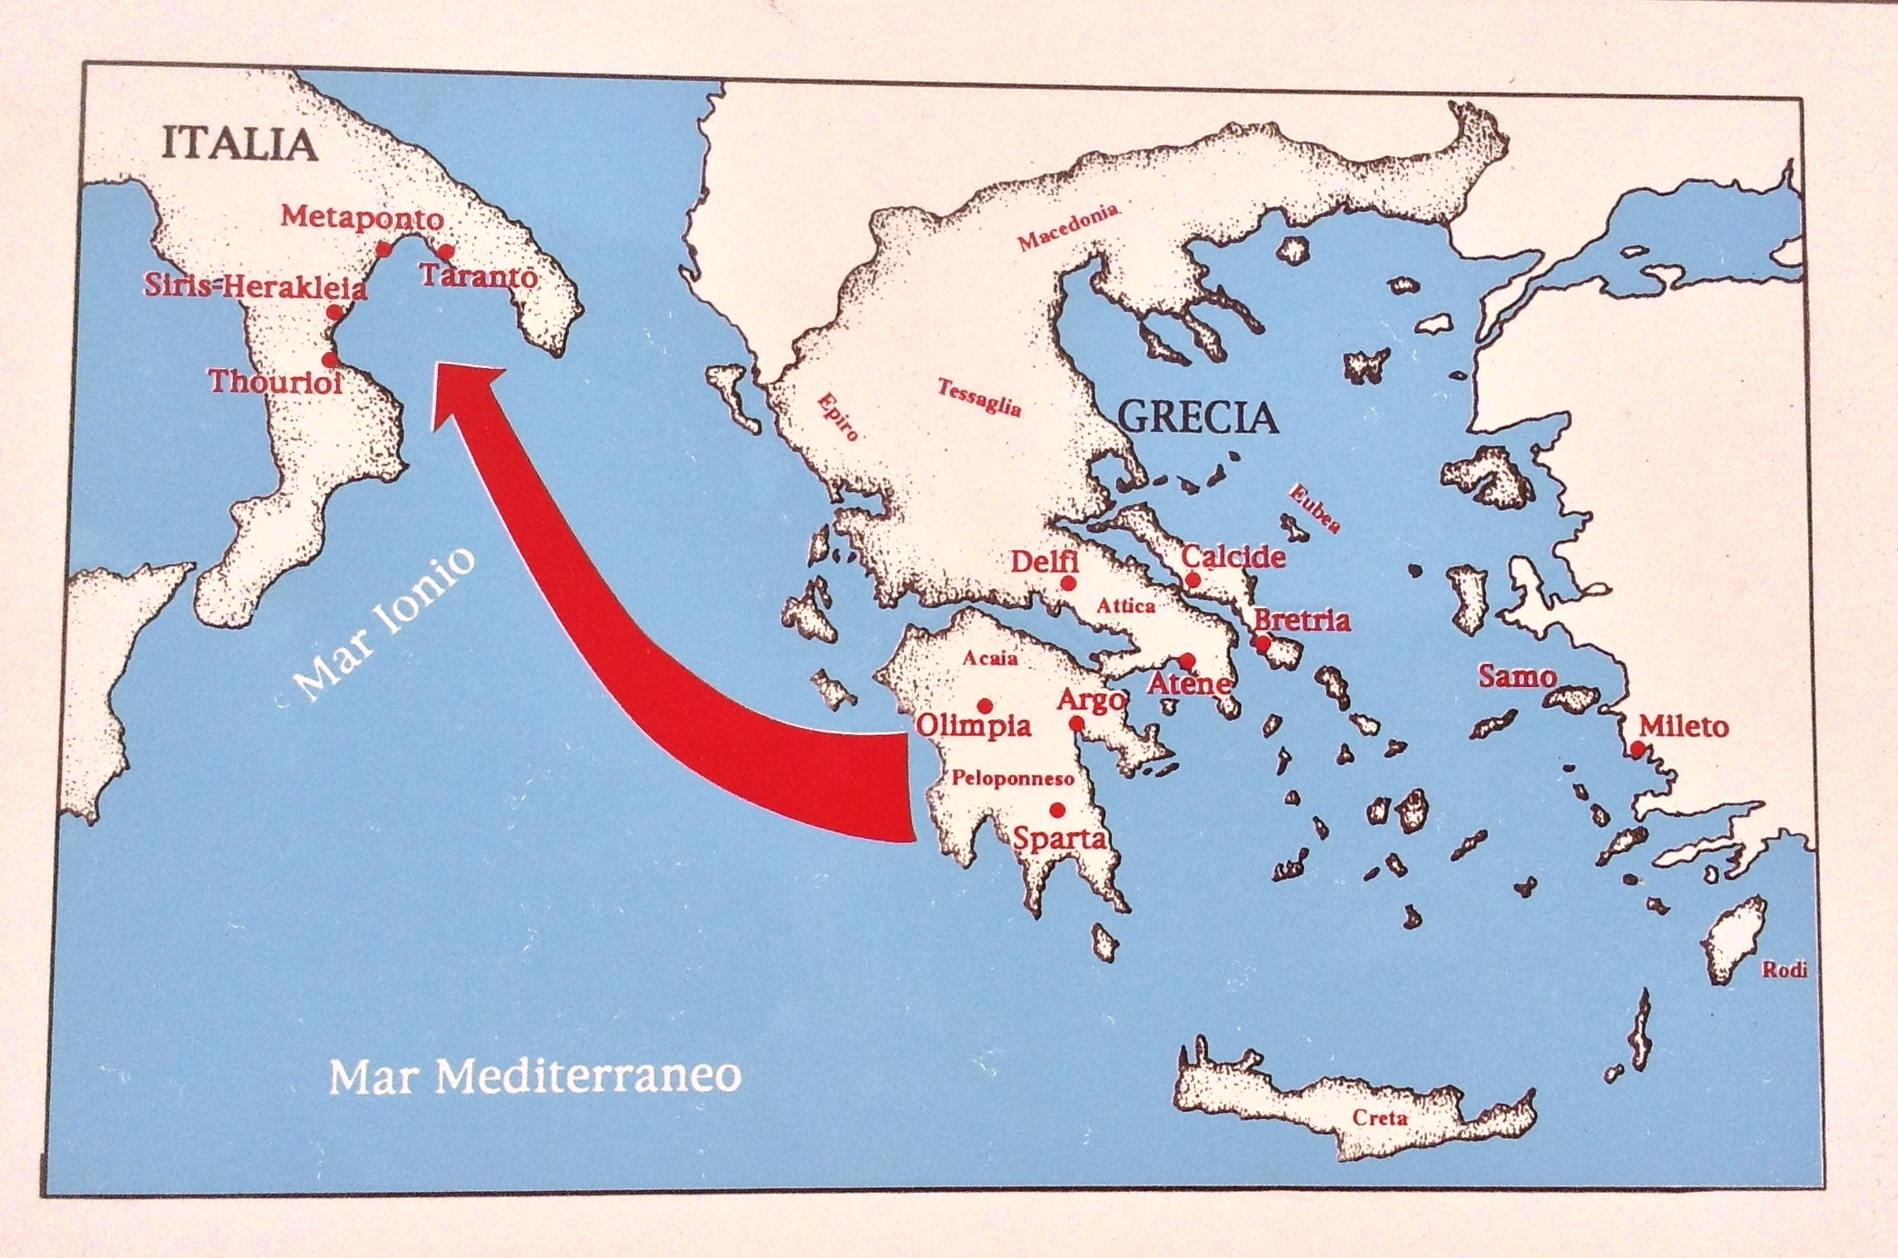 مستعمرات یونانی در جنوب ایتالیا و سیسیل 750 ق.م